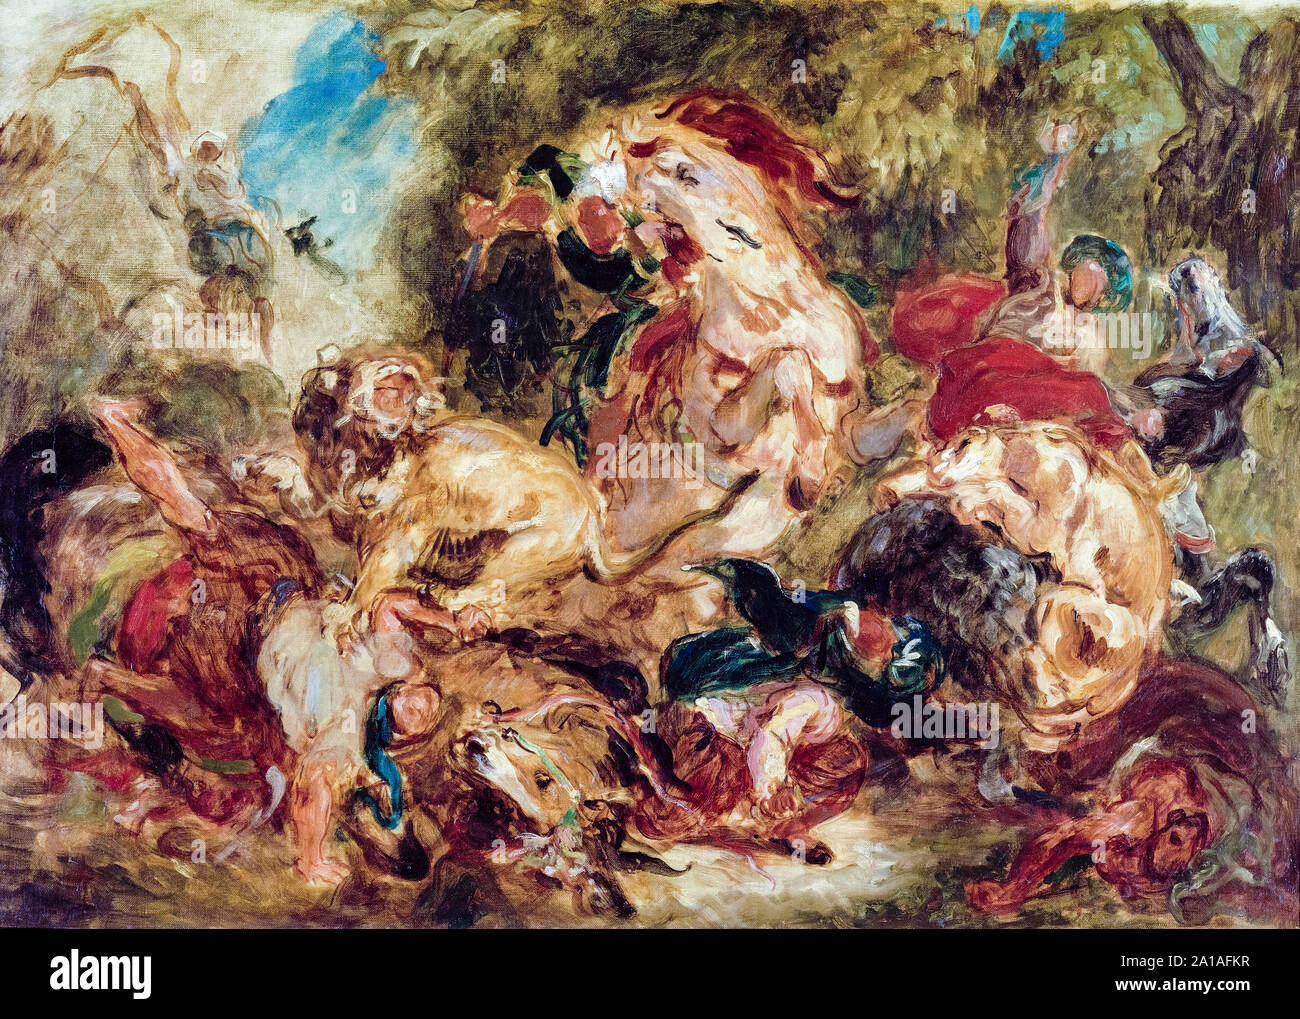 Eugène Delacroix, The Lion Hunt, painting sketch, circa 1854 Stock Photo